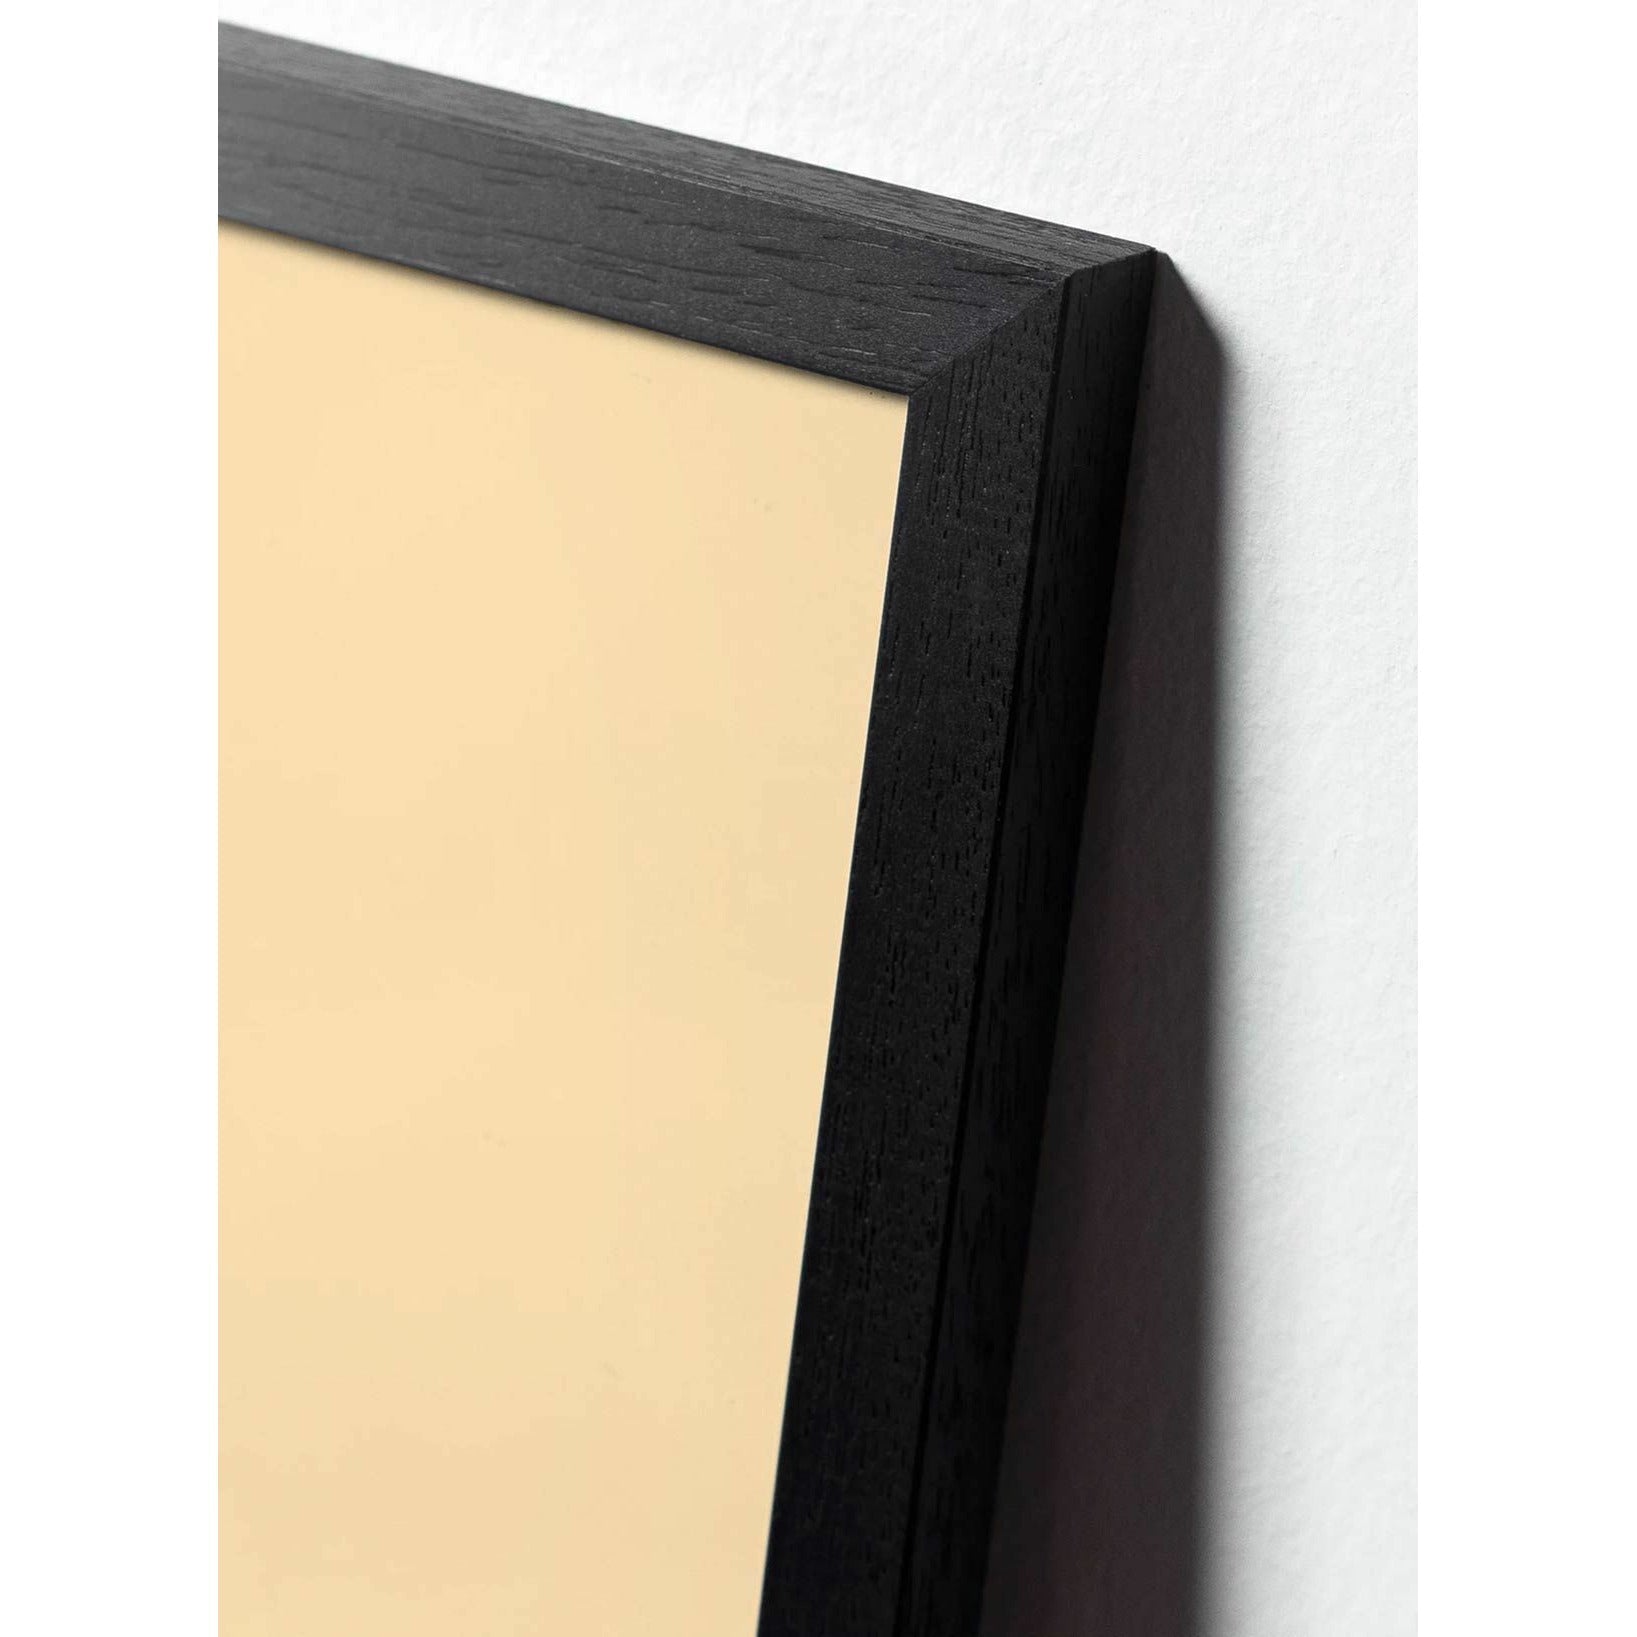 Cartel de diseño de diseño de oso de peluche, marco hecho de madera lacada negra 50 x70 cm, gris